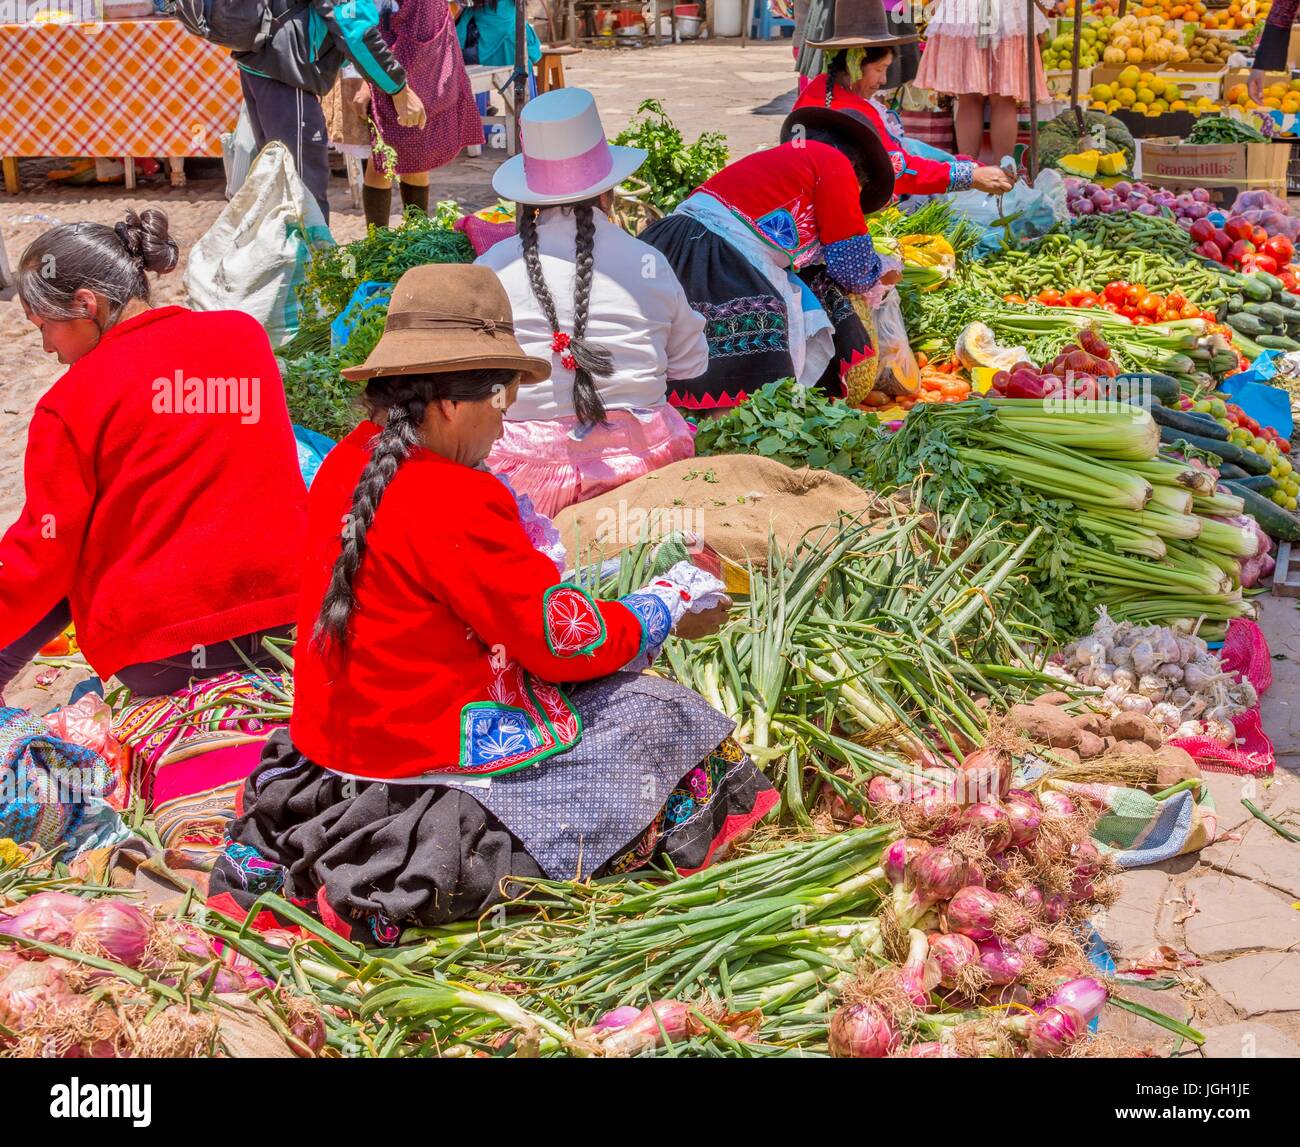 Marché de Pisac au Pérou, les femmes péruviennes avec cheveux tressés, les chapeaux et portant des vêtements traditionnels, vendre des légumes au marché de Pisac, l'Amérique du Sud. Banque D'Images